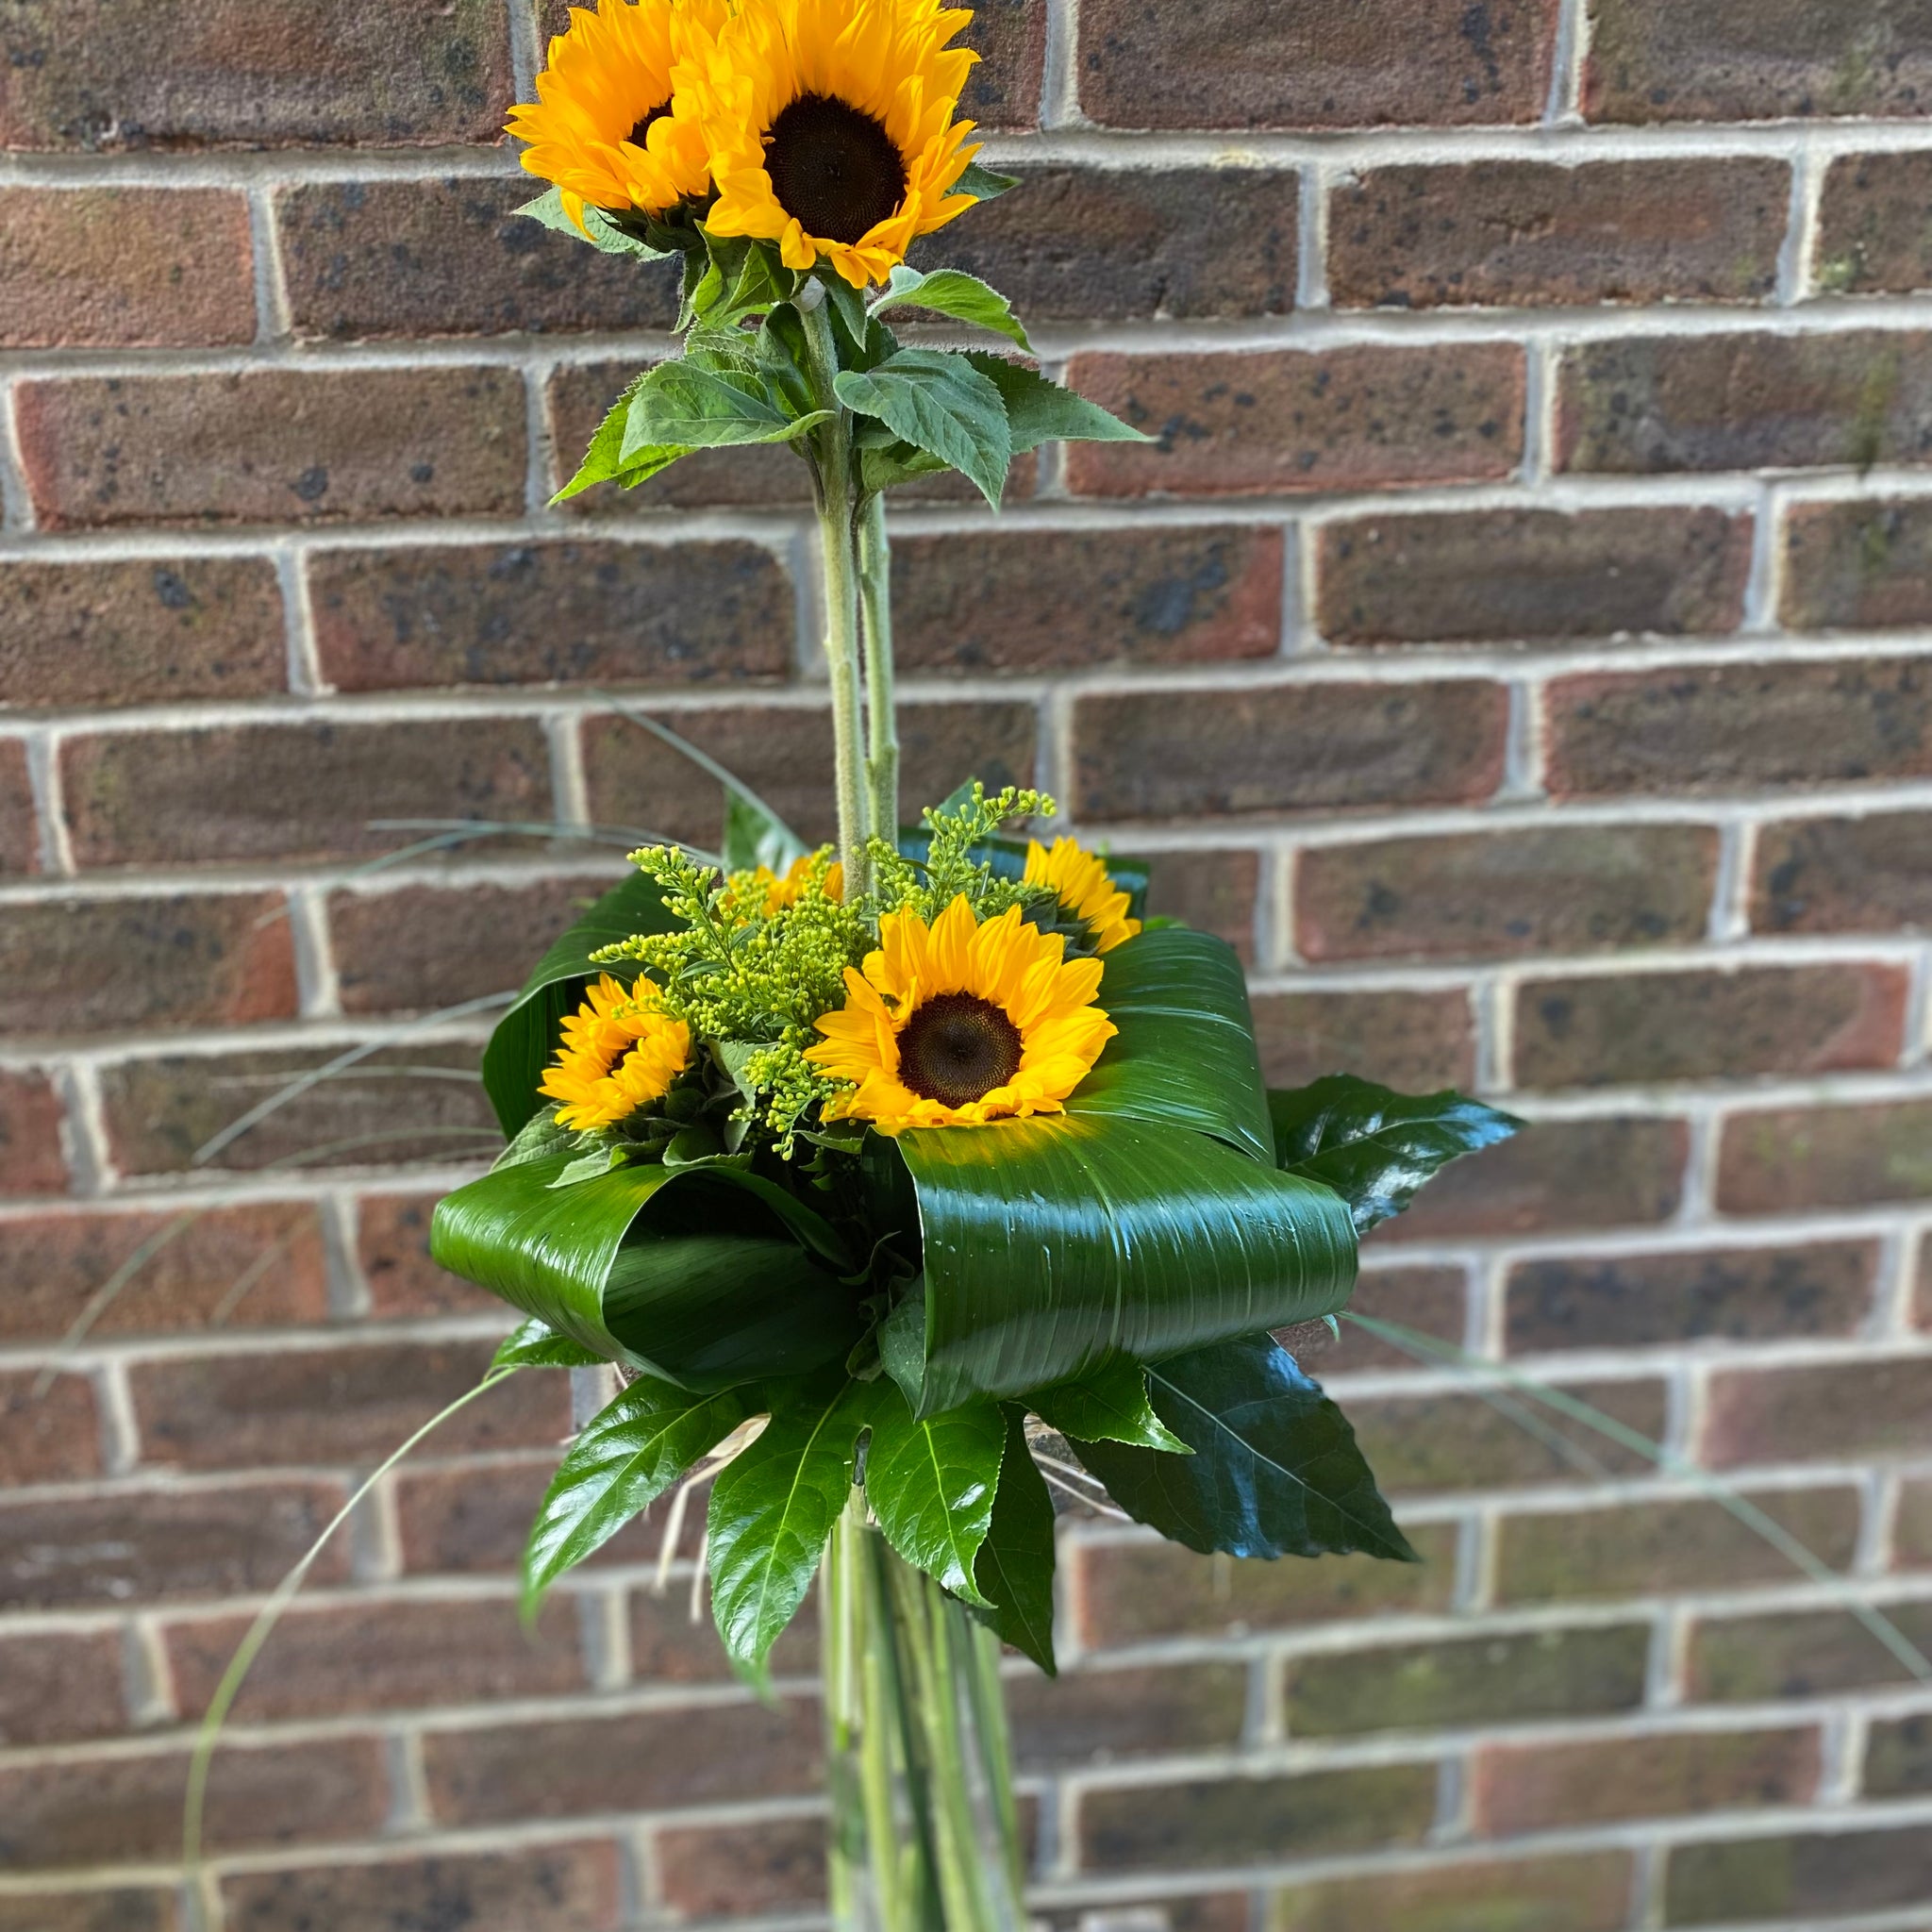 Sunflower smiles